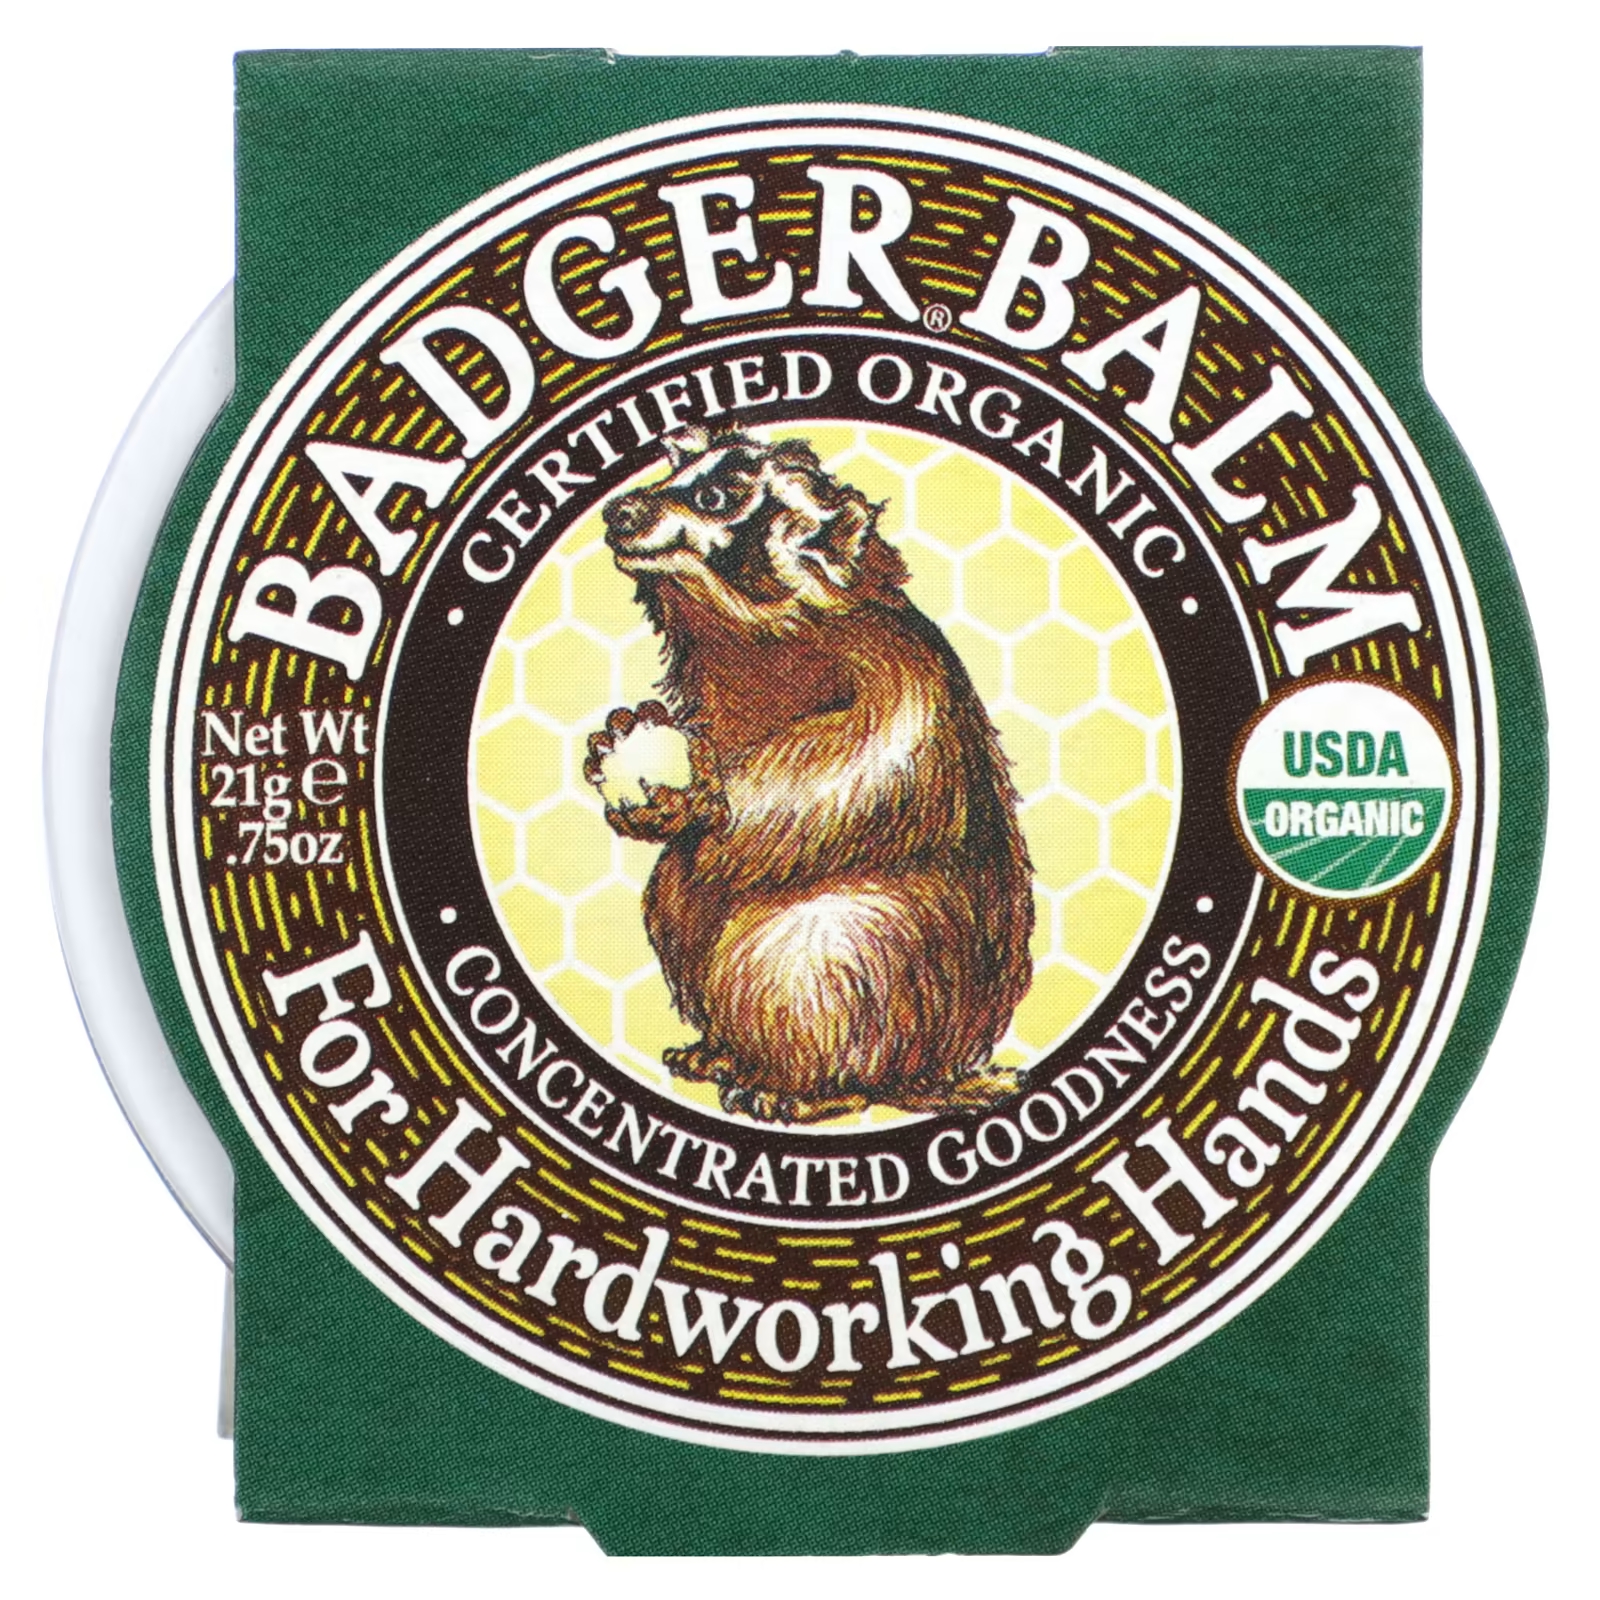 Органический бальзам Badger Company badger for hardworking hands, 21 гр. badger company органический бальзам для сна лаванда и бергамот 21 г 0 75 унции